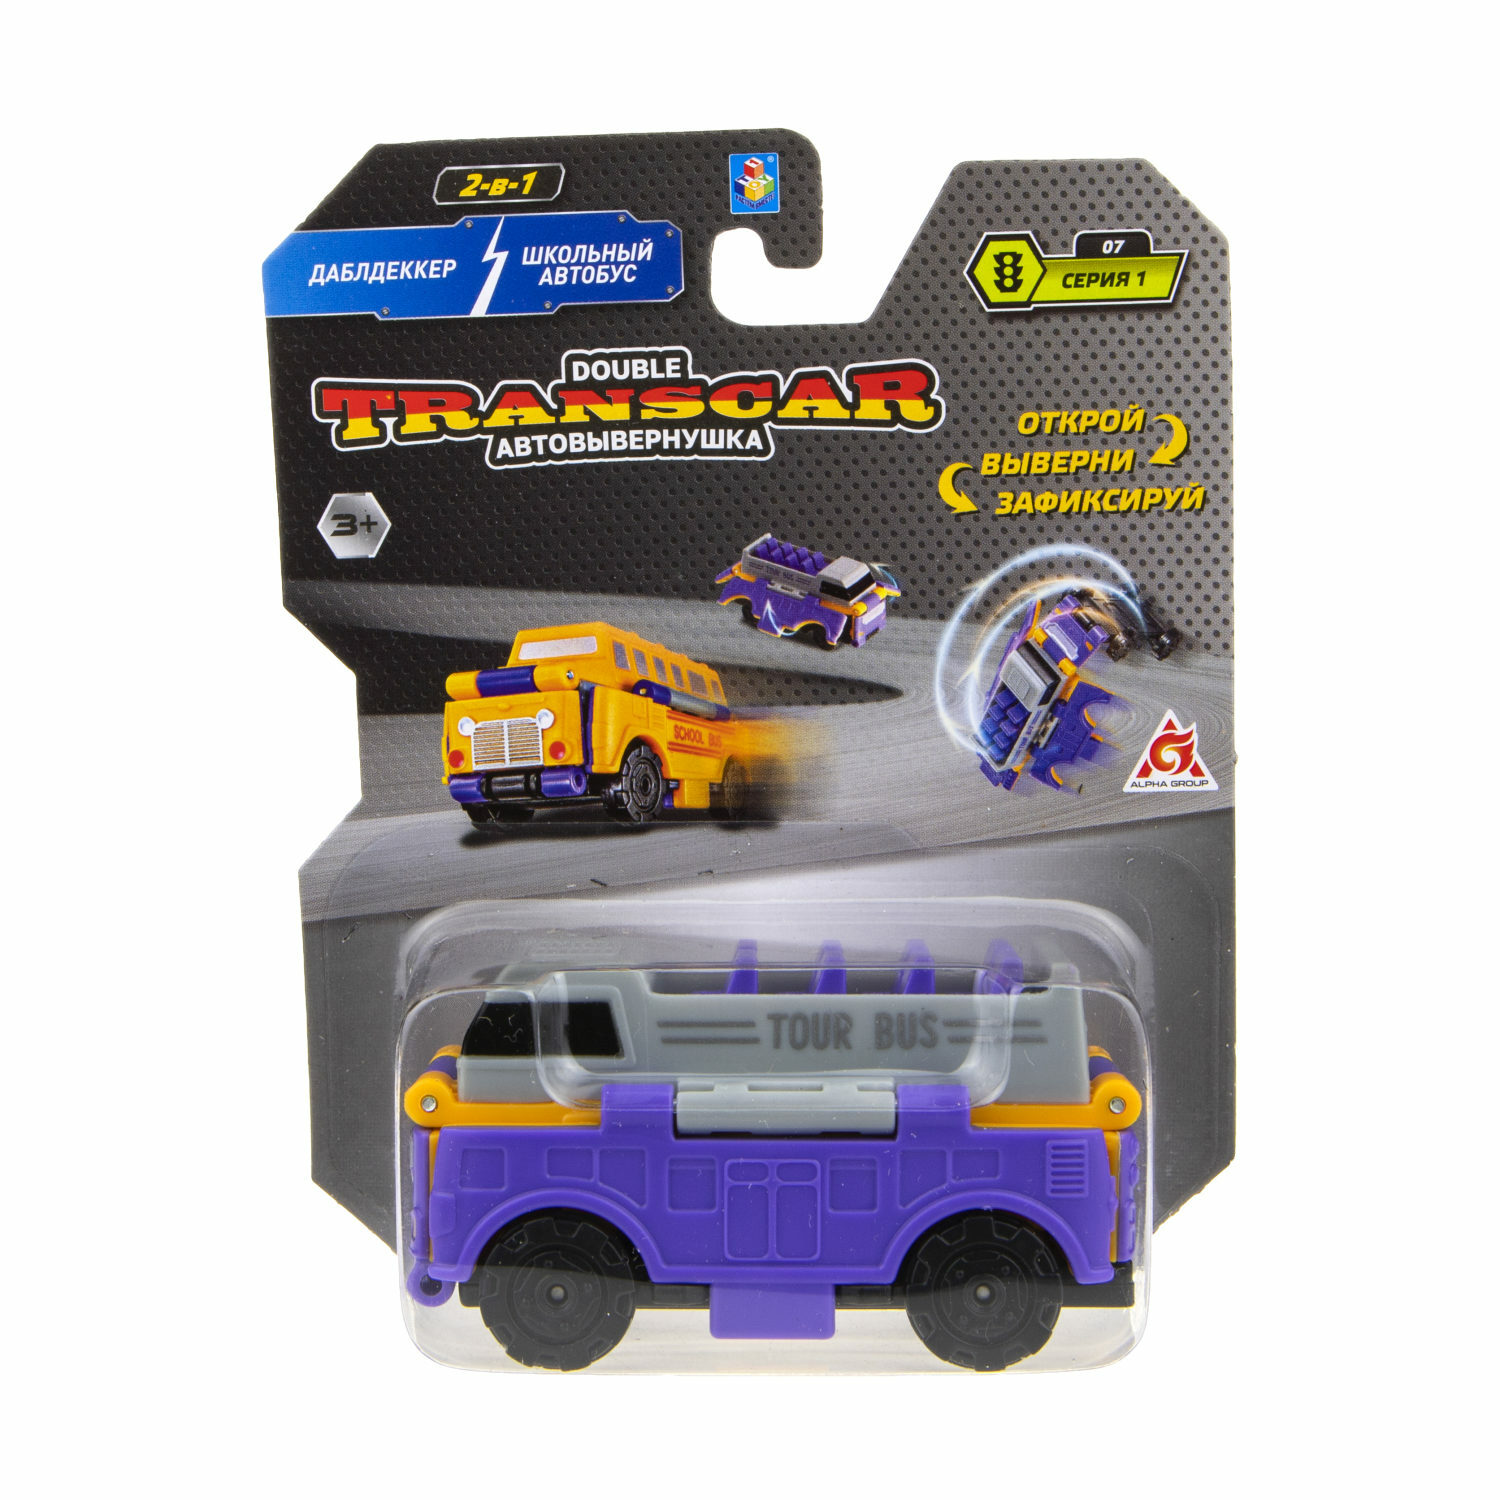 Машинка игрушечная Transcar Double Автовывернушка Даблдэккер – Школьный автобус Т18282 - фото 4